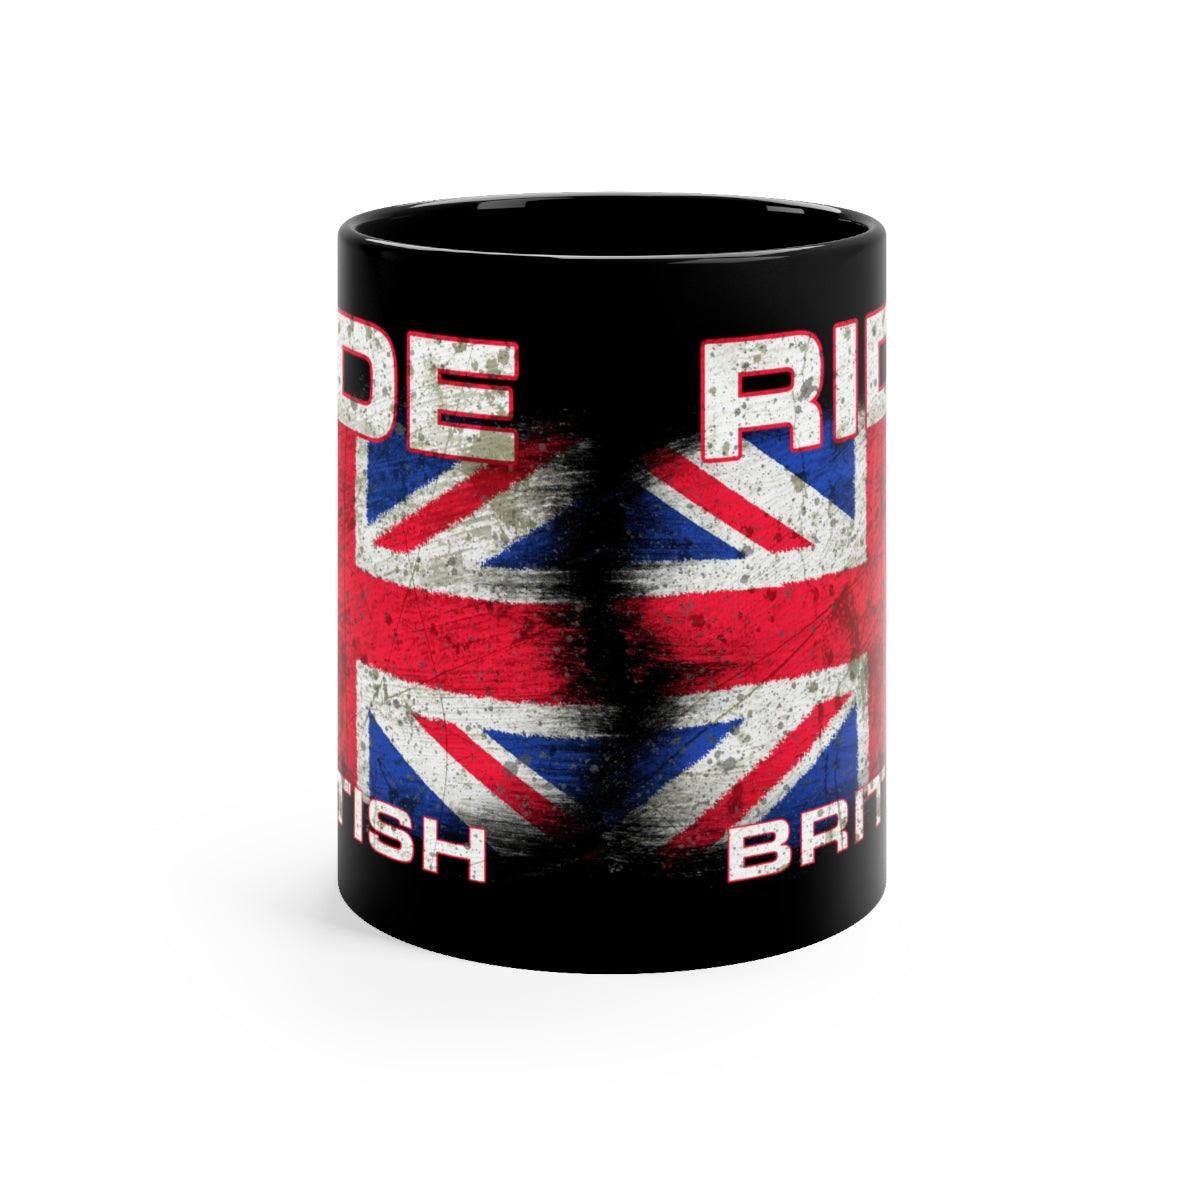 Ride British - Black mug 11oz